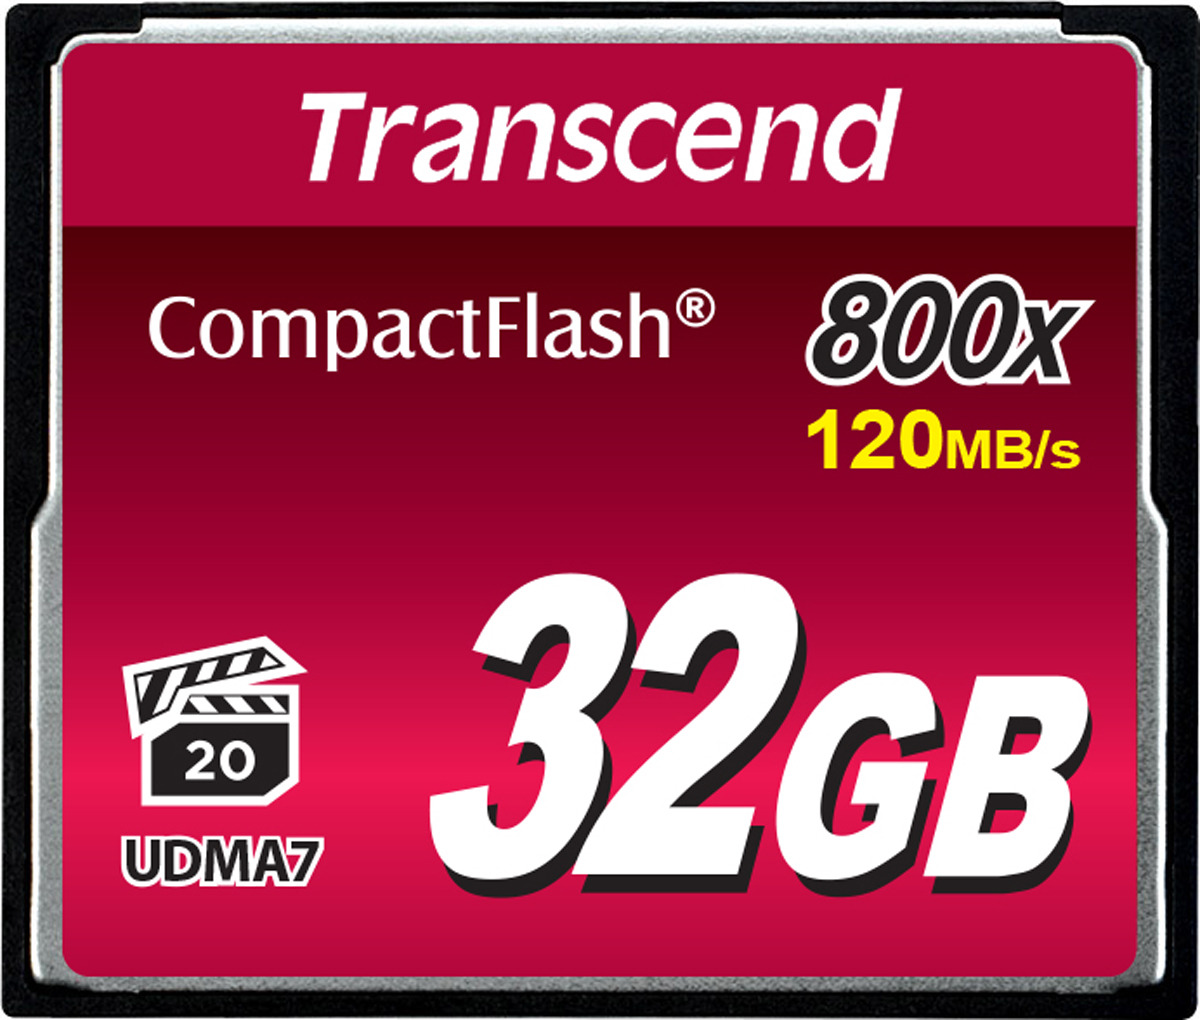 купить Transcend TS32GCF800, Compact Flash 32GB 800x в Алматы